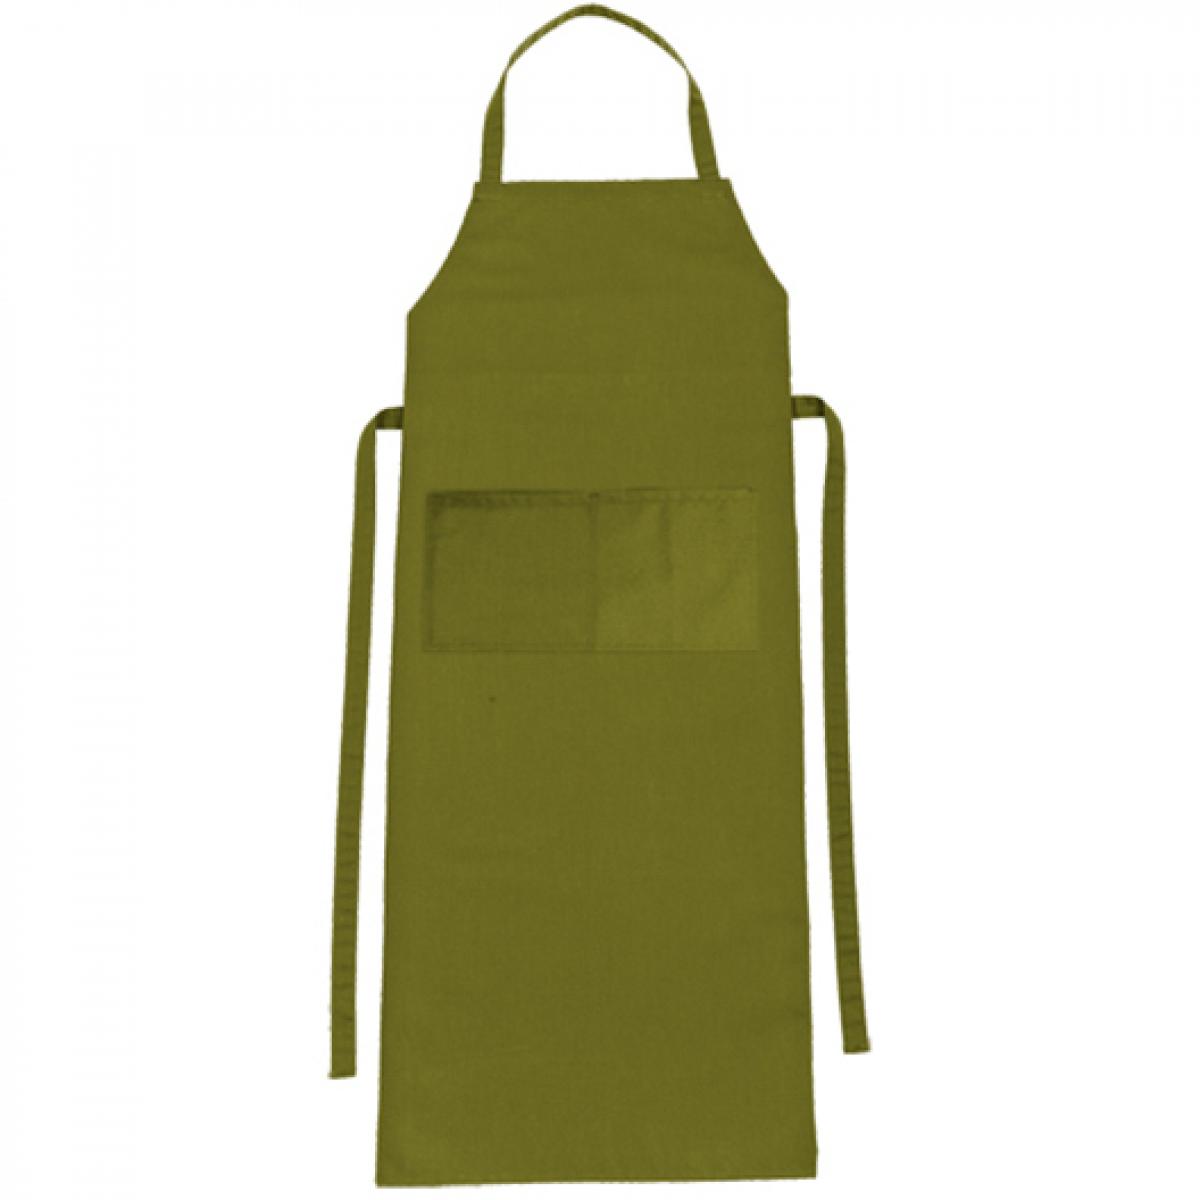 Hersteller: CG Workwear Herstellernummer: 01146-01 Artikelbezeichnung: Latzschürze Verona Classic Bag 90 x 75 cm Farbe: Oasis